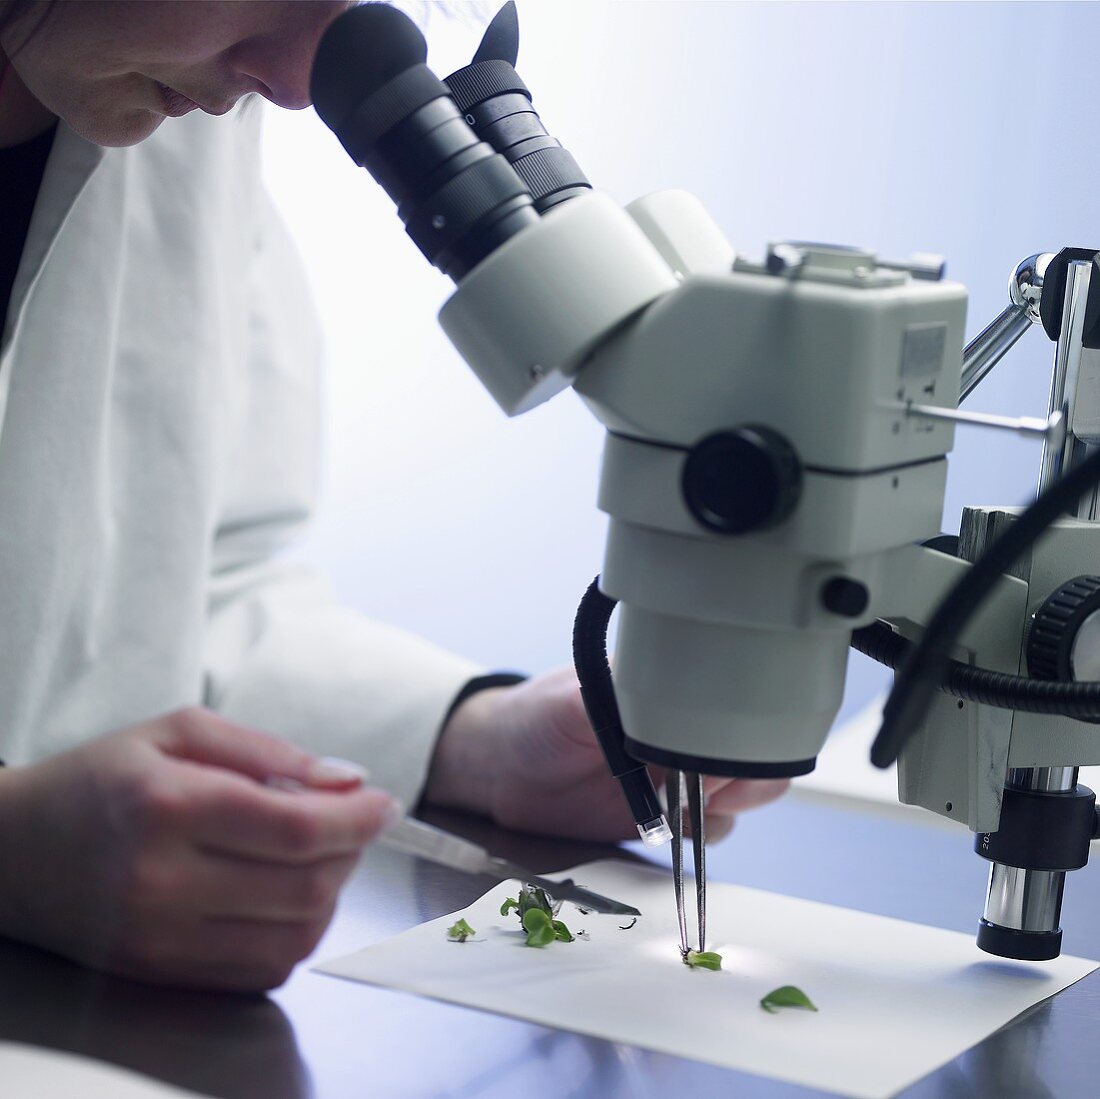 Frau betrachtet Pflanzenteile durch ein Mikroskop